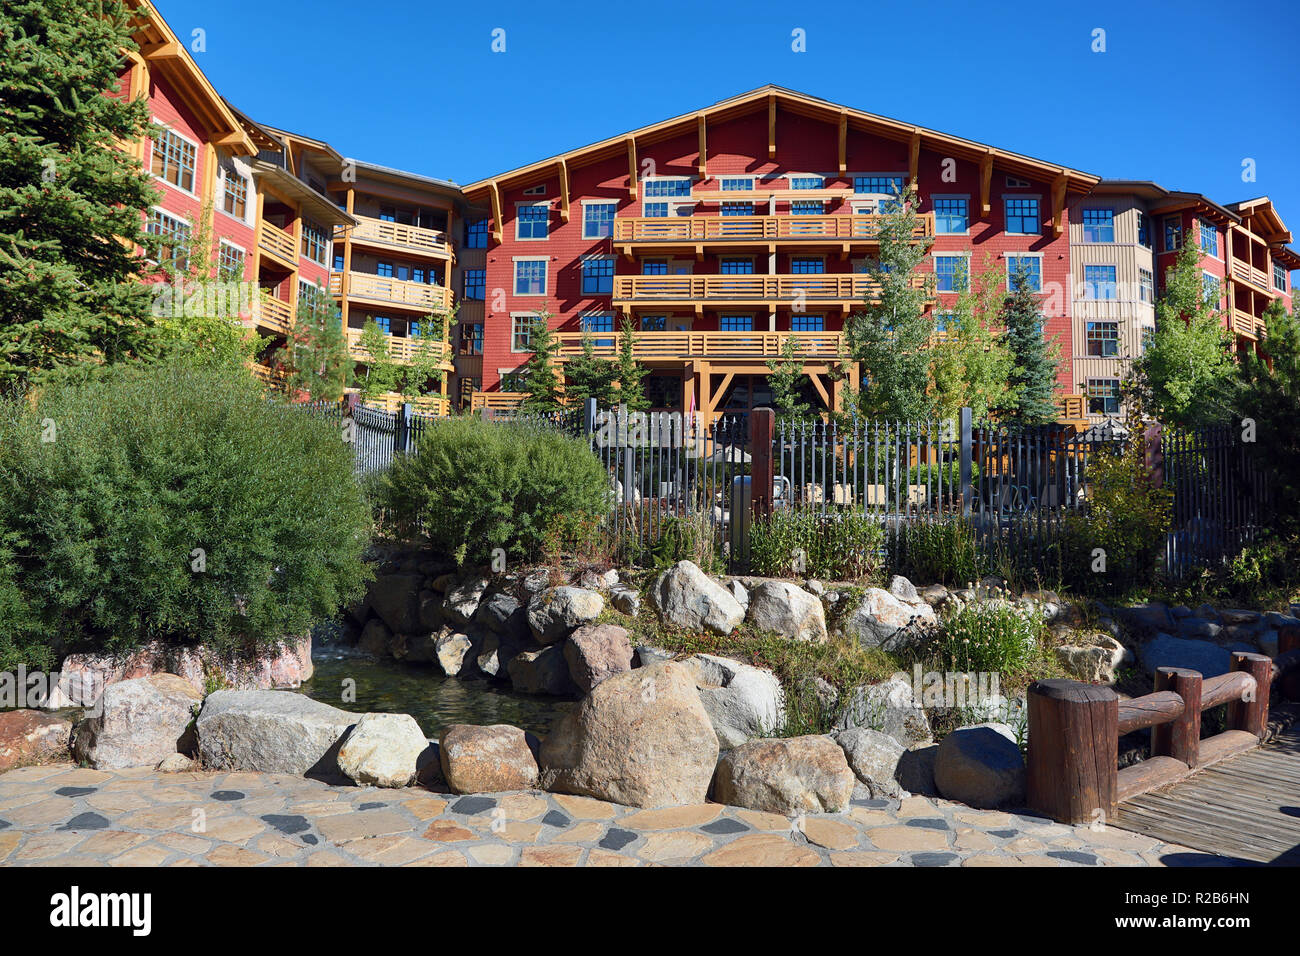 La aldea Lodge Hotel, Mammoth Lakes, California, Estados Unidos de América Foto de stock